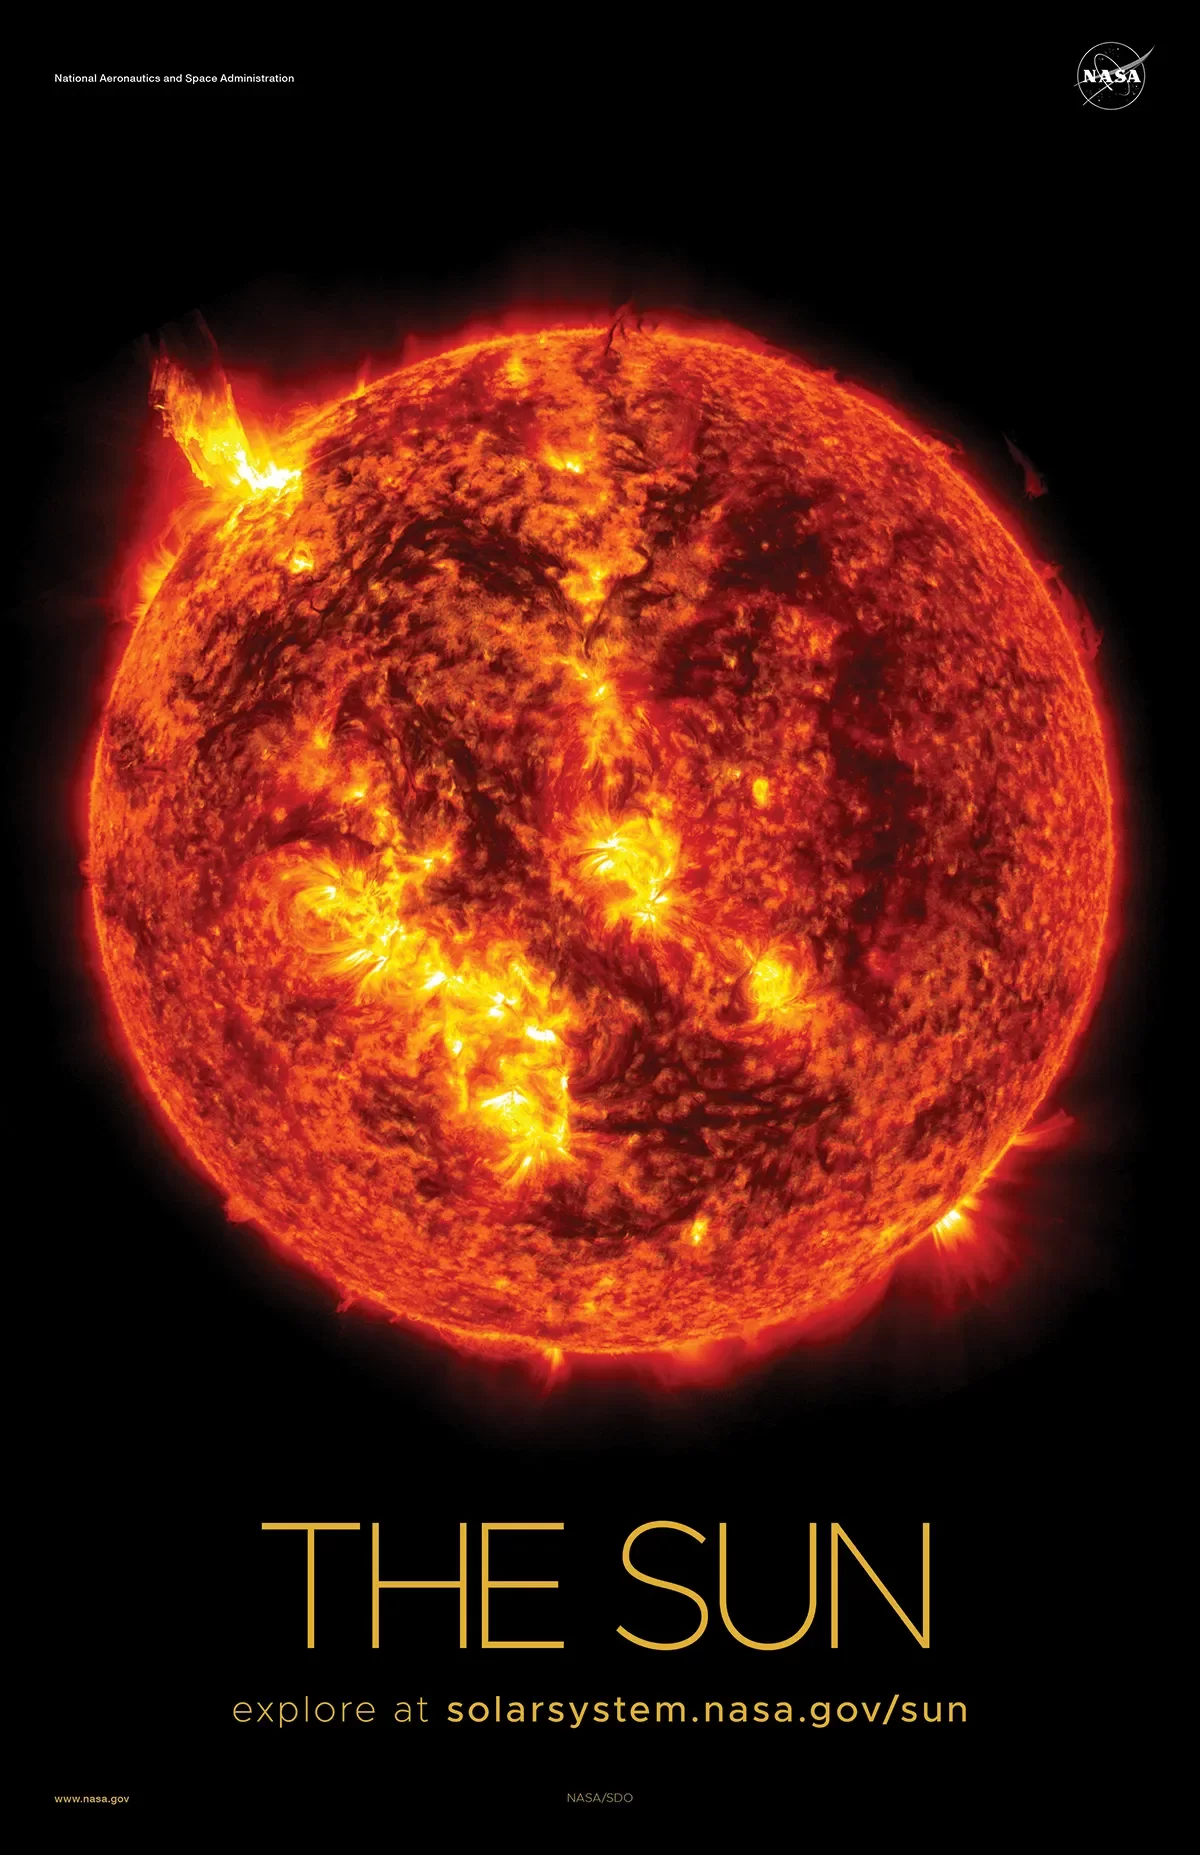 A imagem da explosão solar irrompendo do Sol, vista pelo Solar Dynamics Observatory da NASA em 2013.